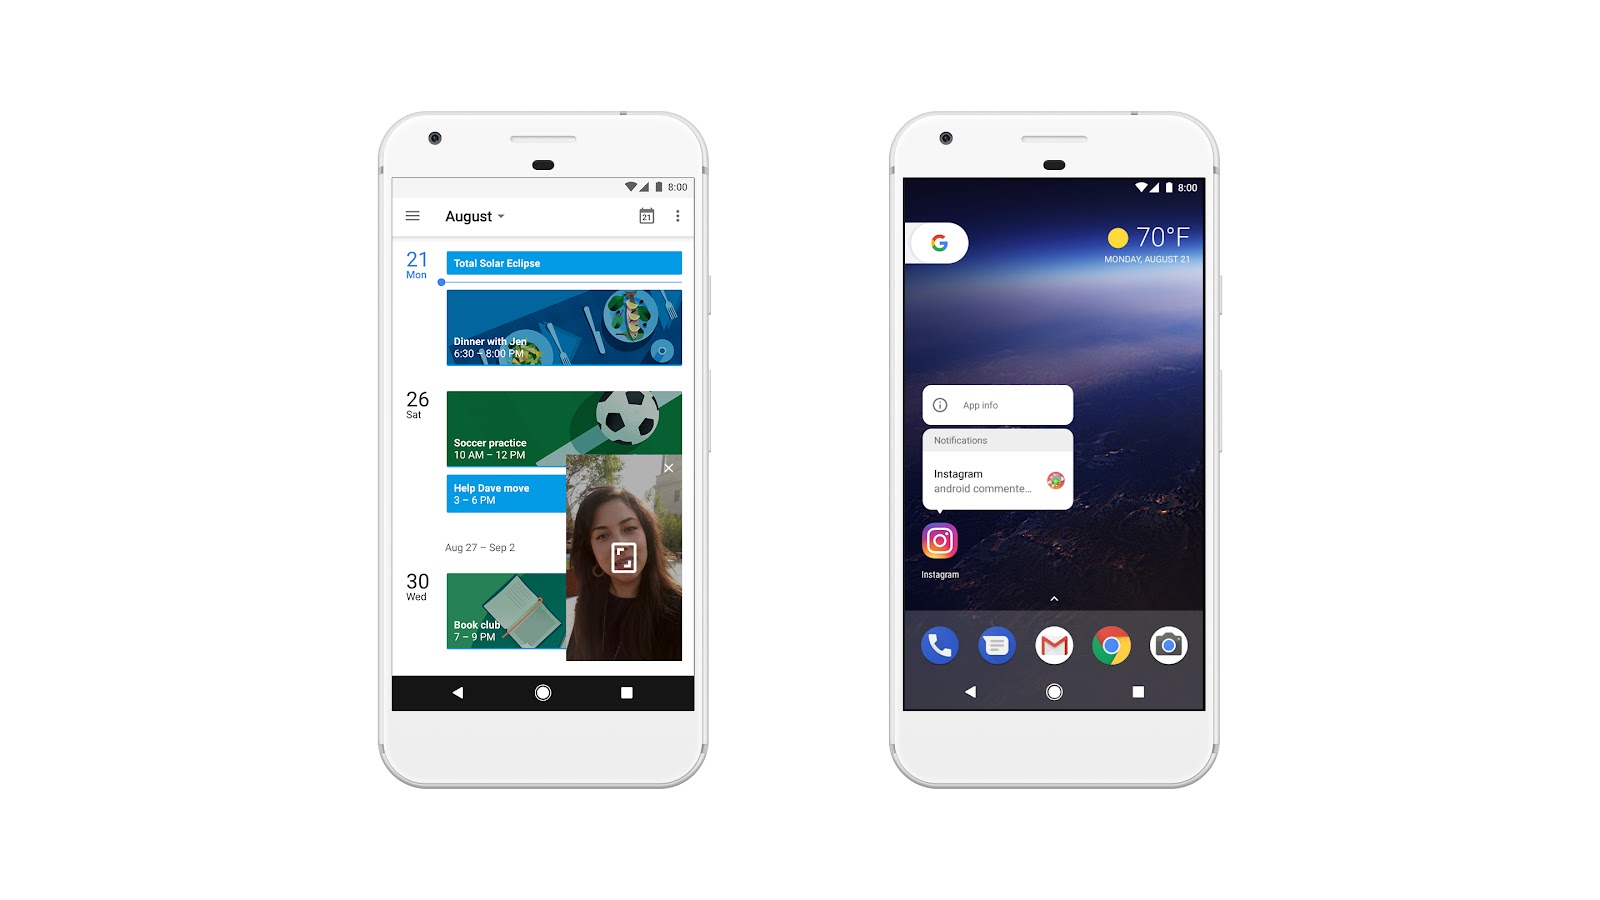 Android 8.0 Oreo: Picture-in-picture, Indicatori di notifica